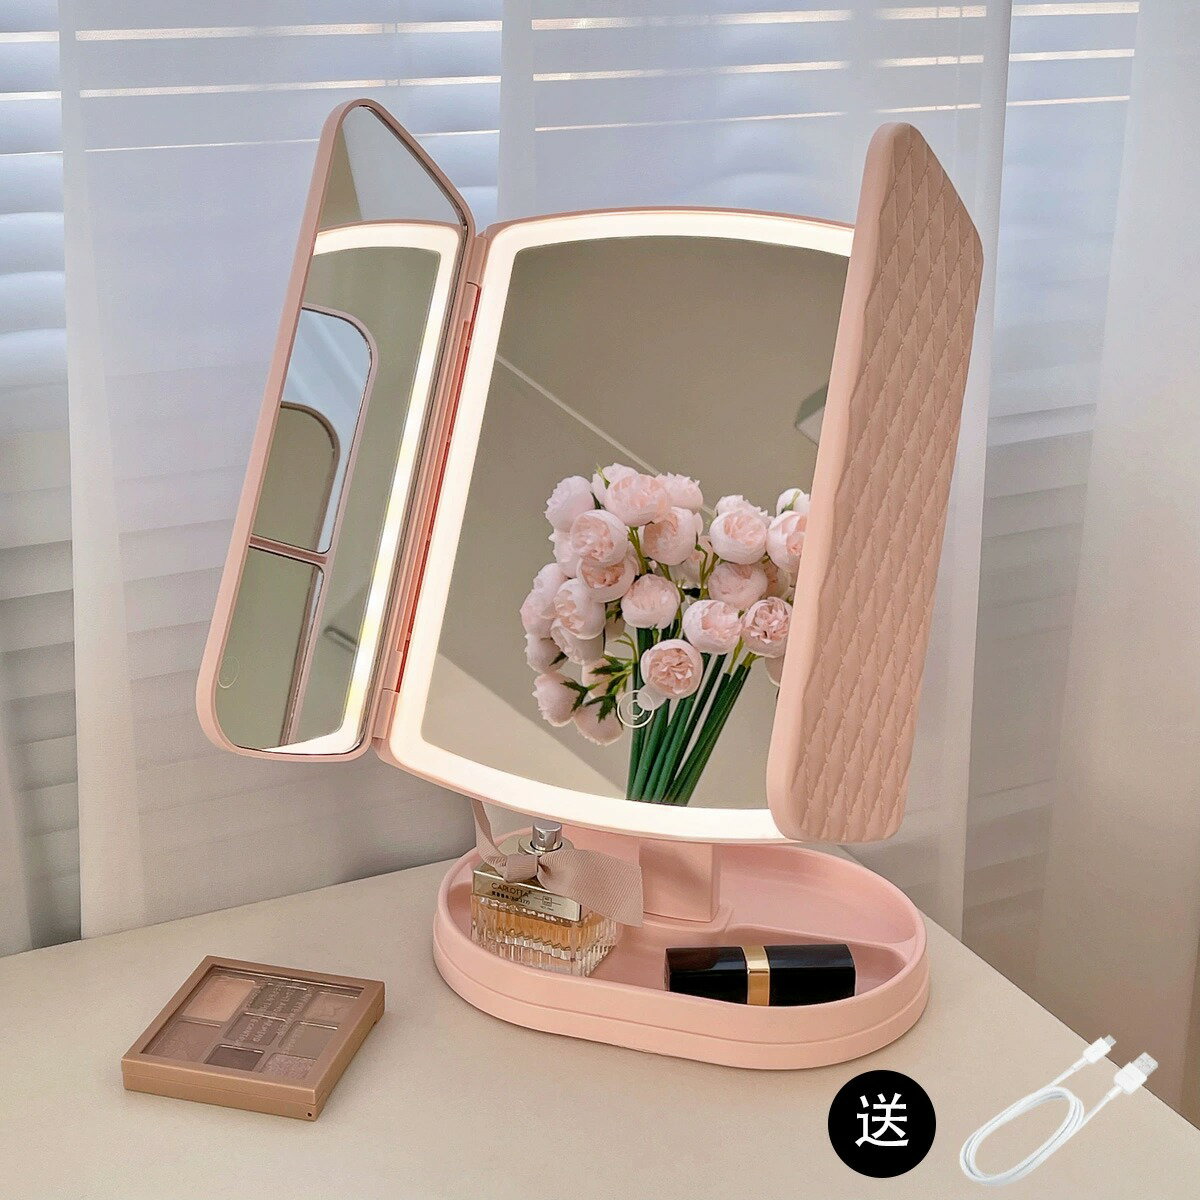 三面化妝鏡 梳妝鏡 美妝鏡 化妝鏡智慧led帶燈台式桌面三折疊網紅梳妝鏡子美妝生日禮物『ZW5704』